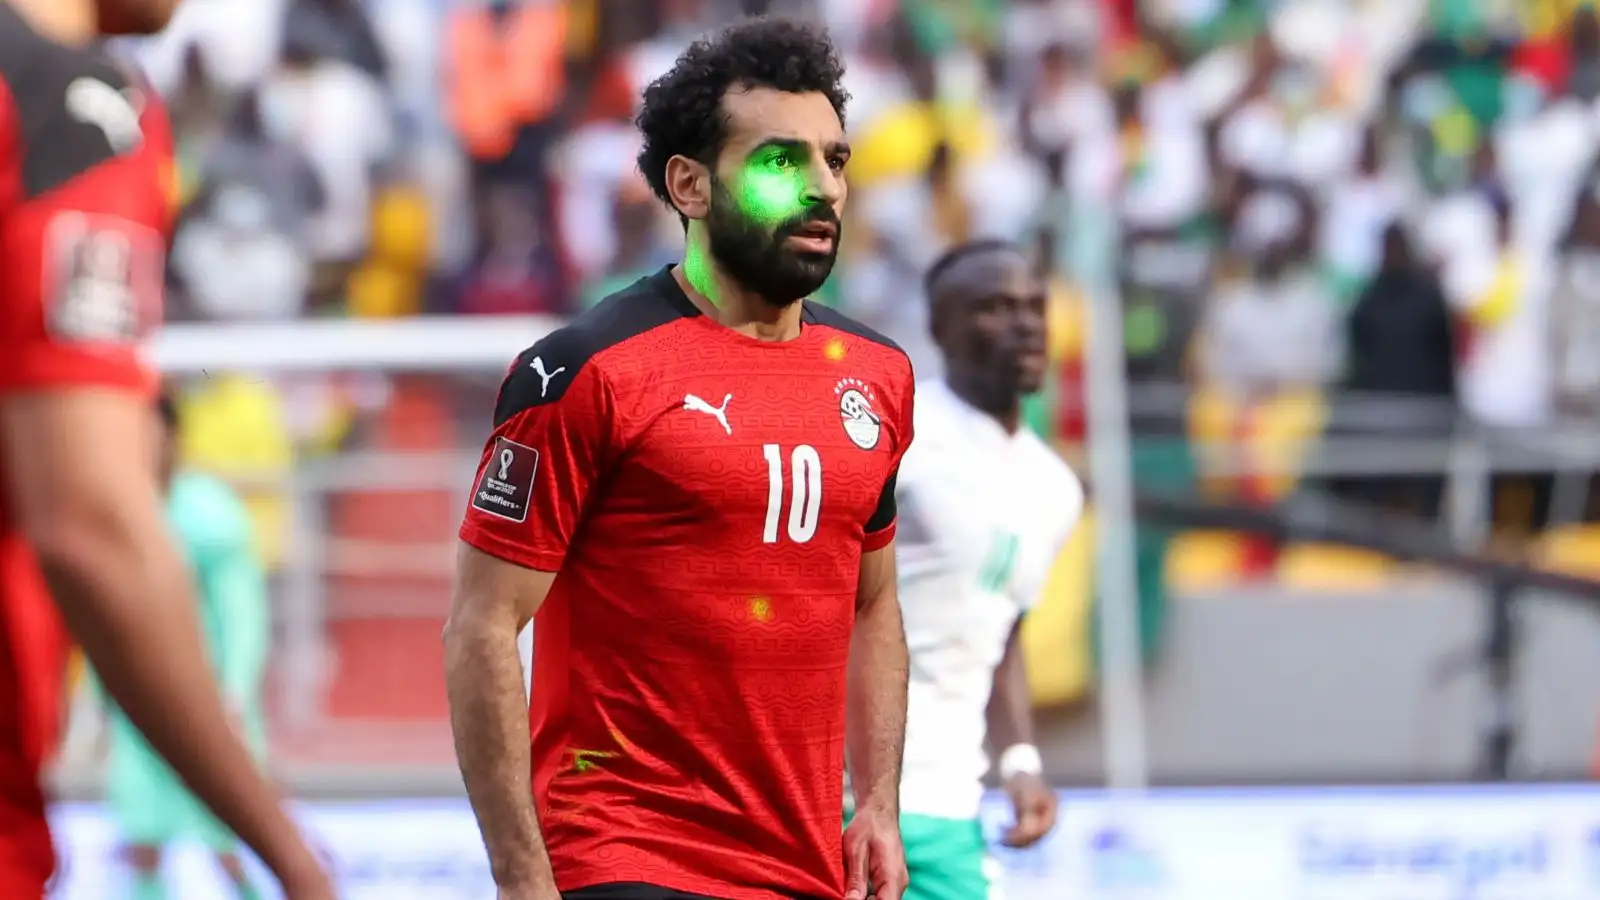 Mo Salah has a laser pen shone in his face